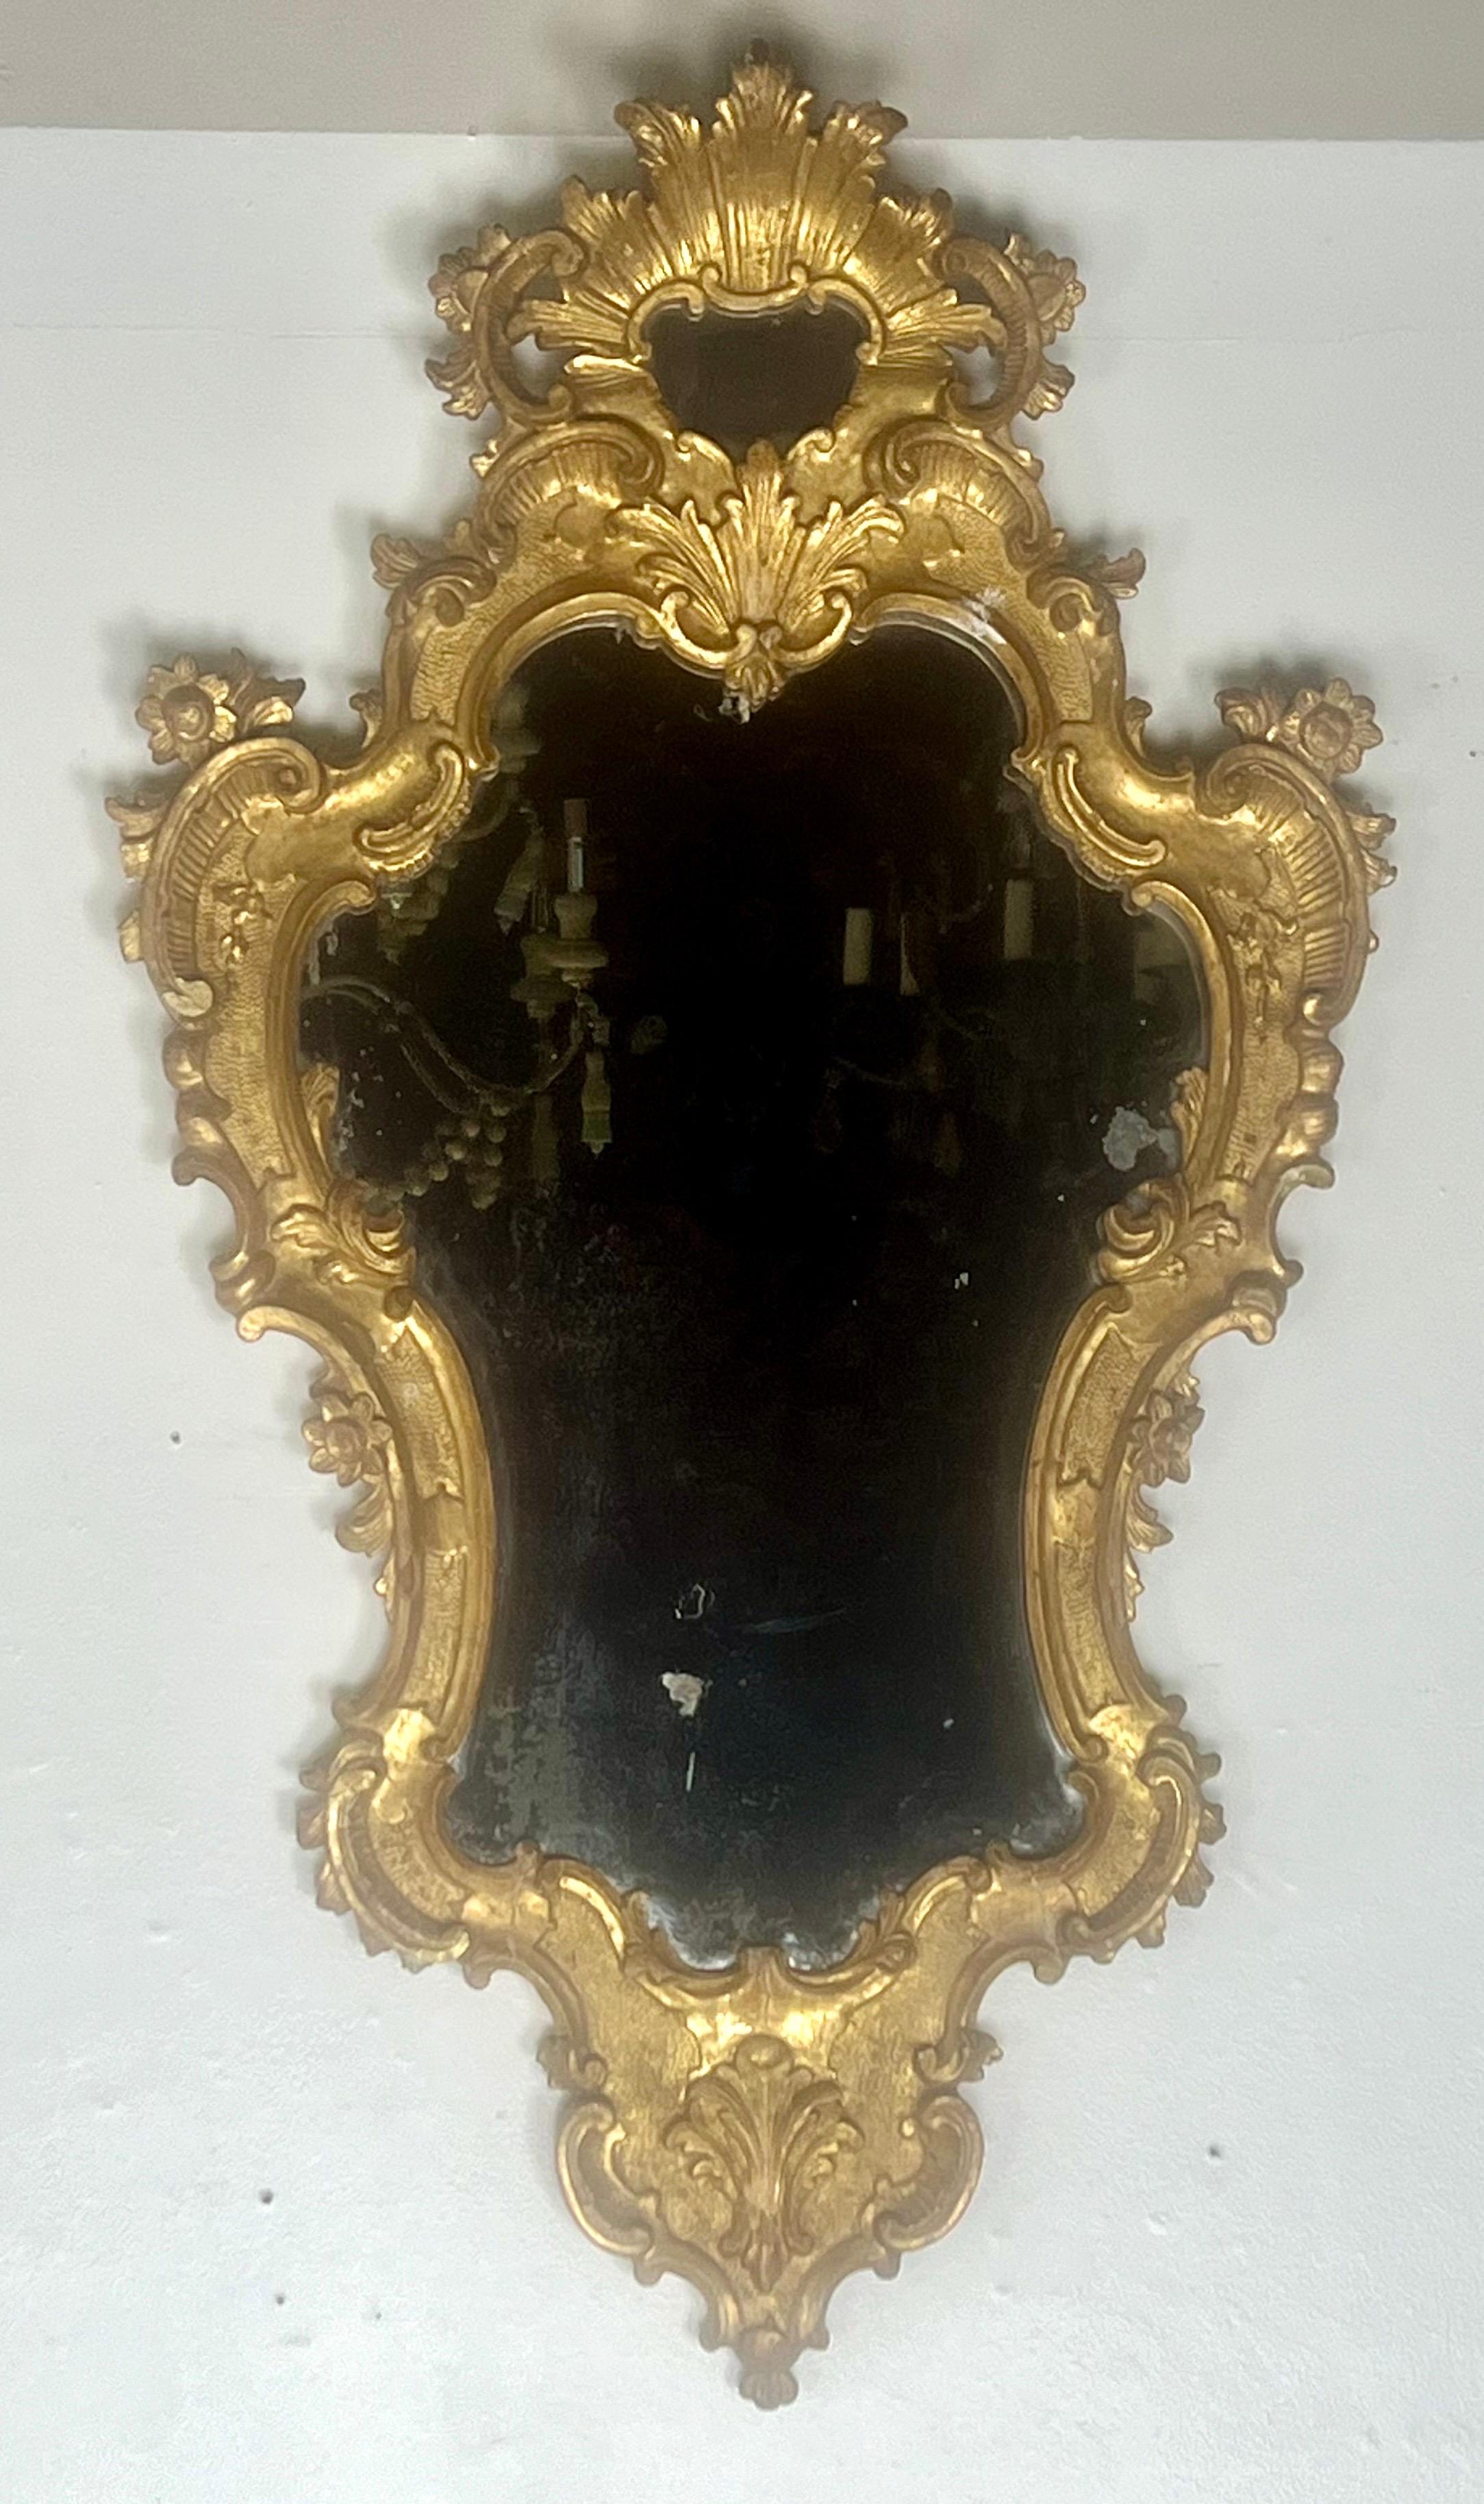 Paire de miroirs en bois doré de style rococo du début du 19e siècle avec des cadres élaborés. Les cadres ont une riche couleur dorée et des détails complexes, avec des volutes, des feuilles d'acanthe, des fleurs et des coquillages.  Le miroir